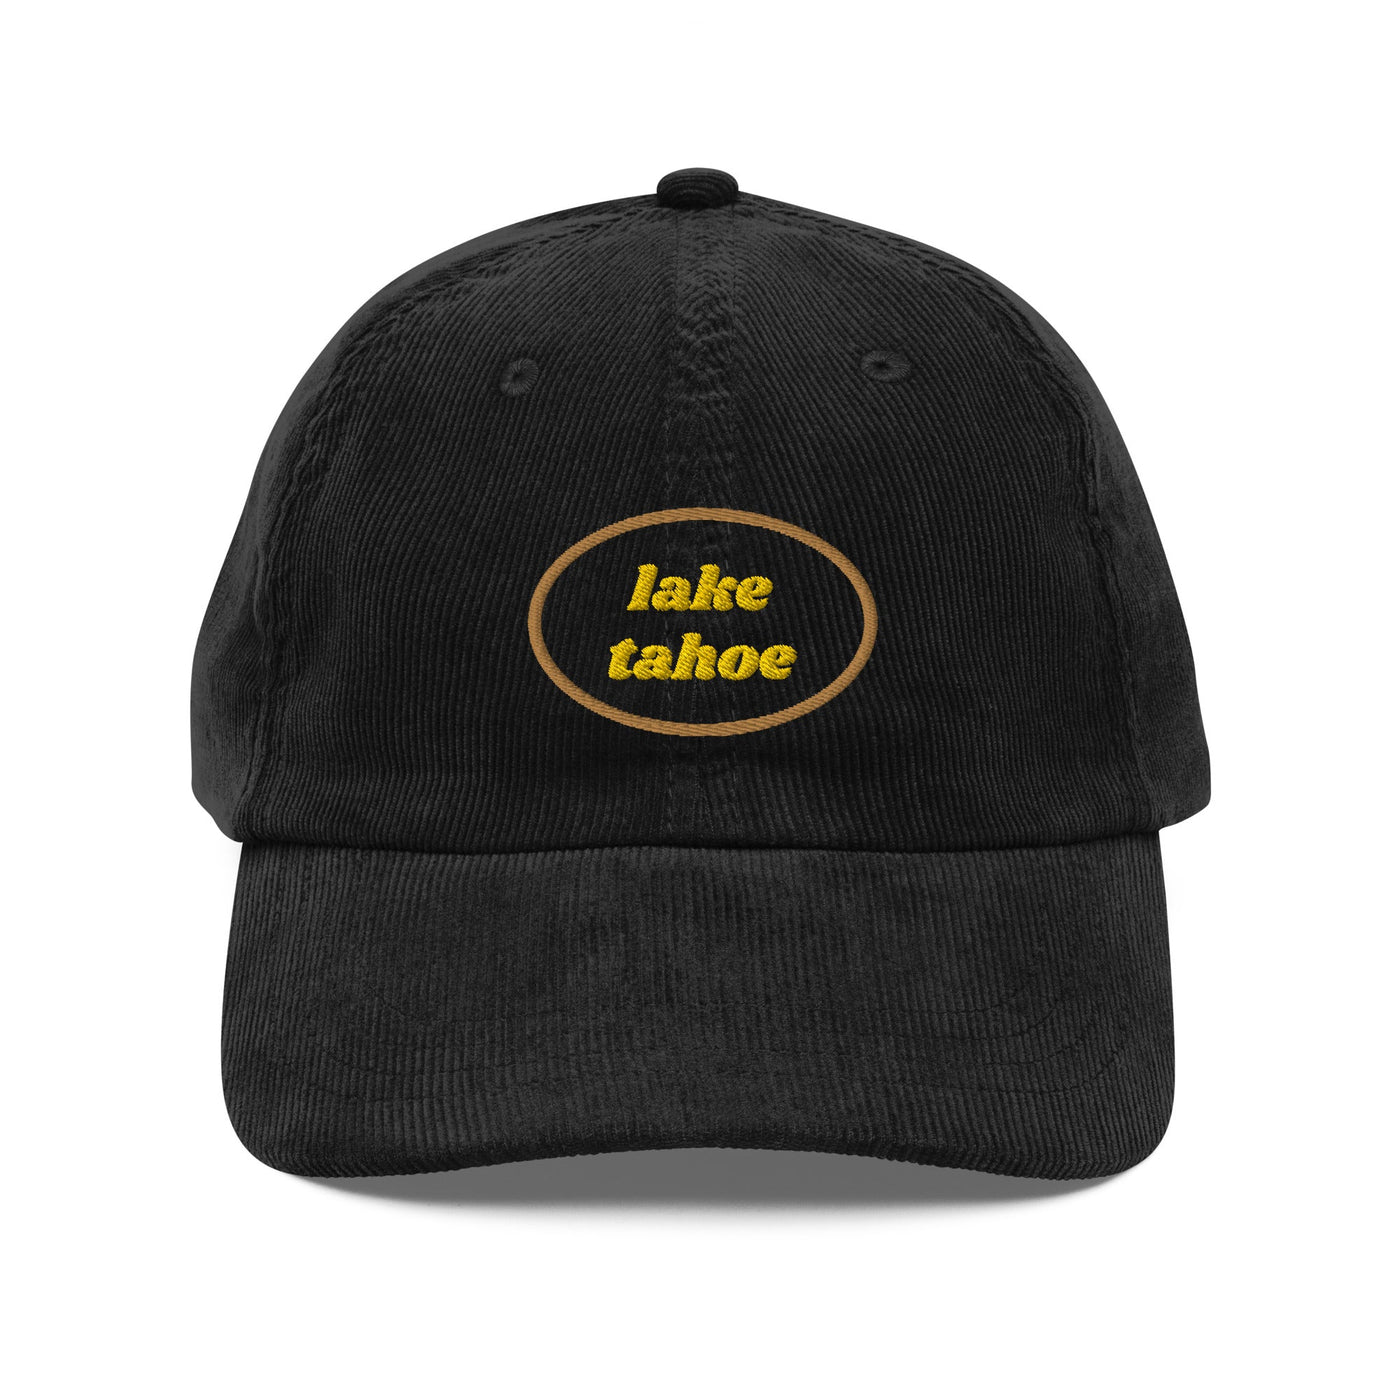 Lake Tahoe Vintage Corduroy Cap - Ezra's Clothing